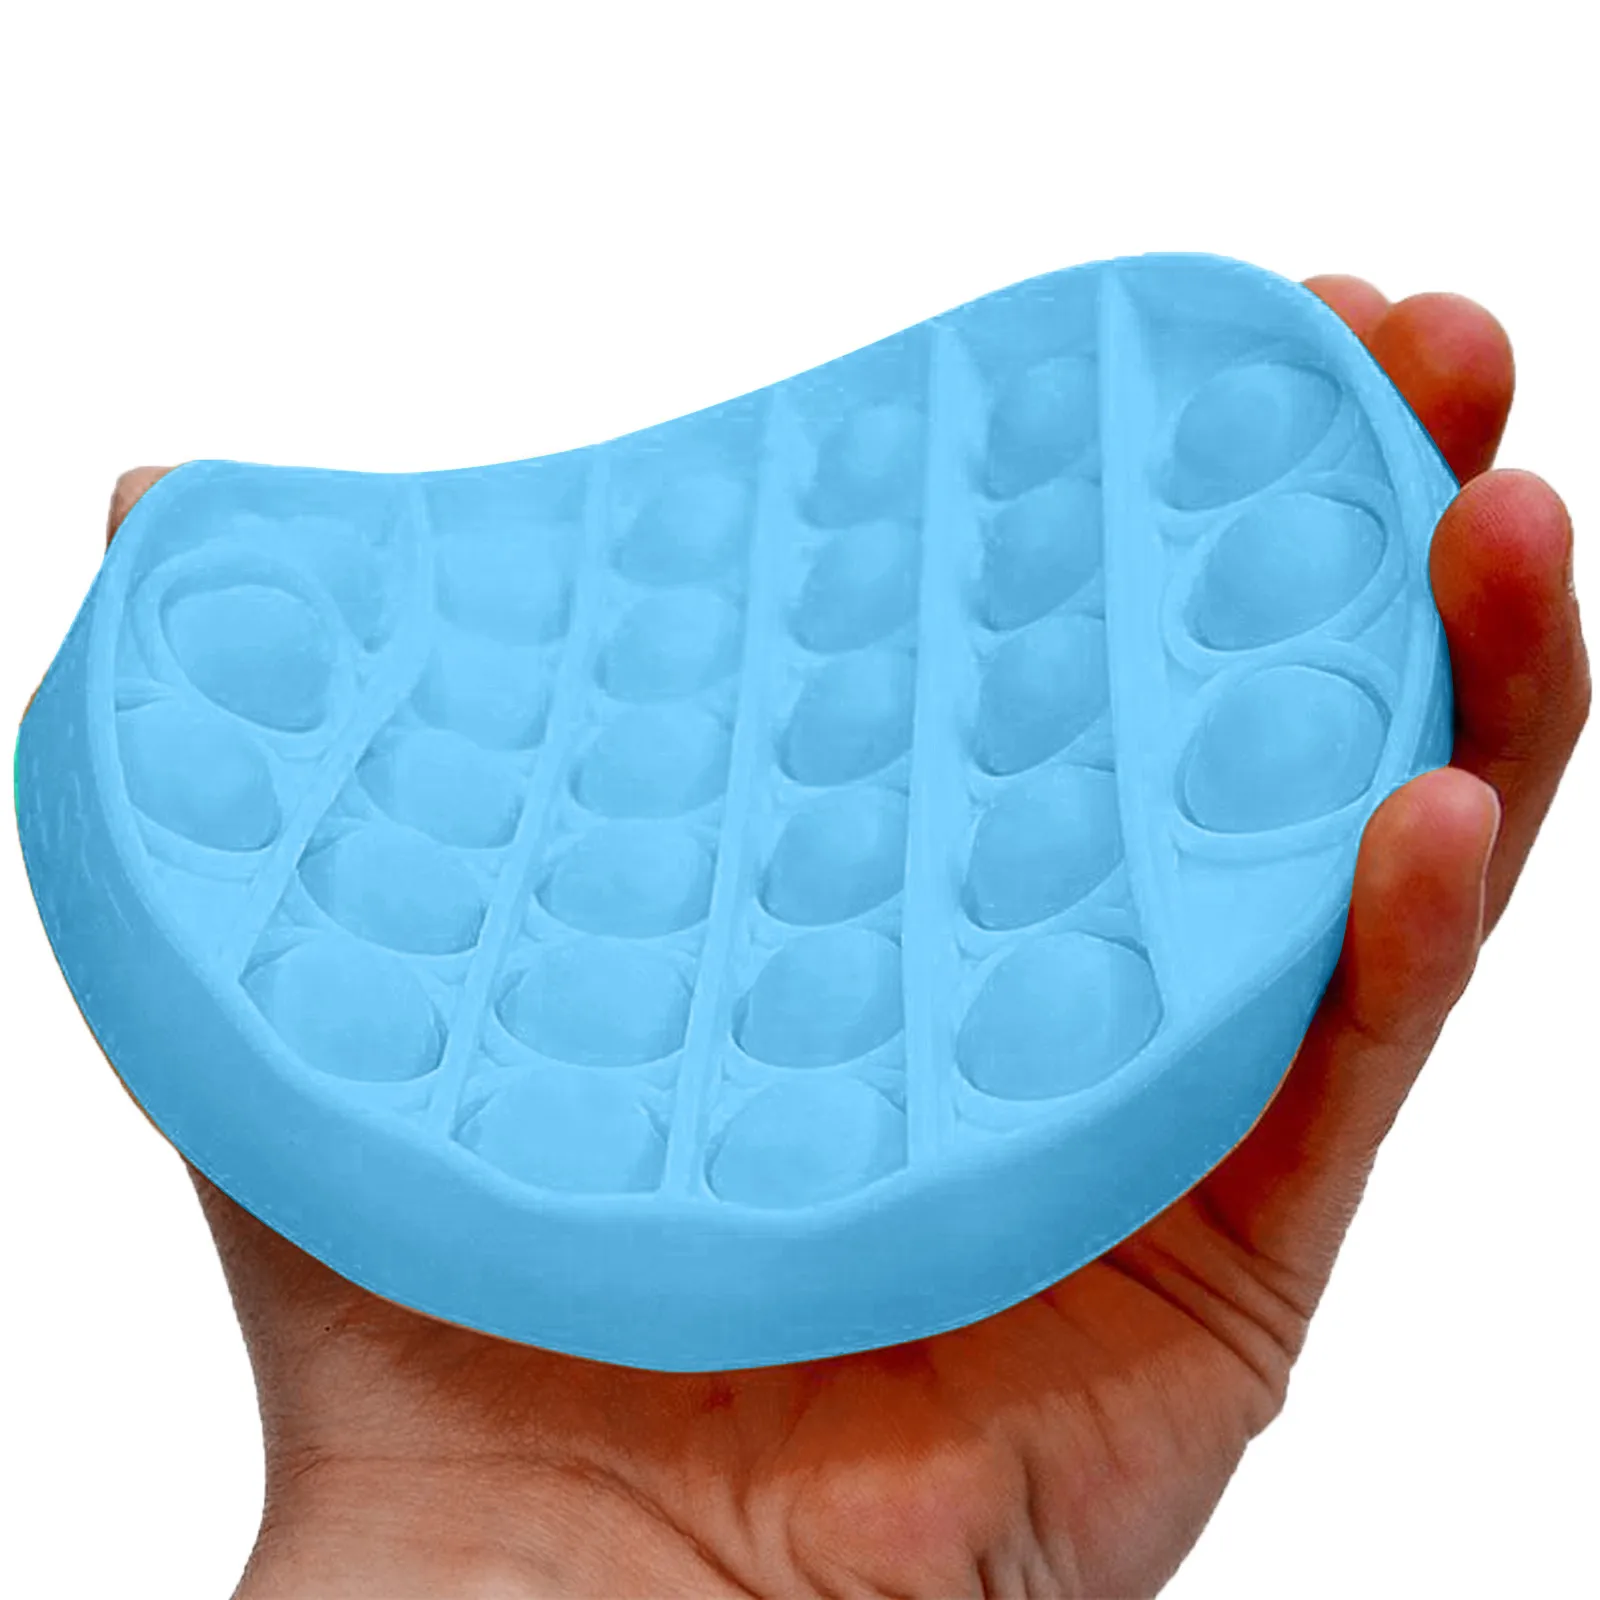 Пузырьковая сенсорная игрушка для аутизма сжимаемая снятия стресса забавная